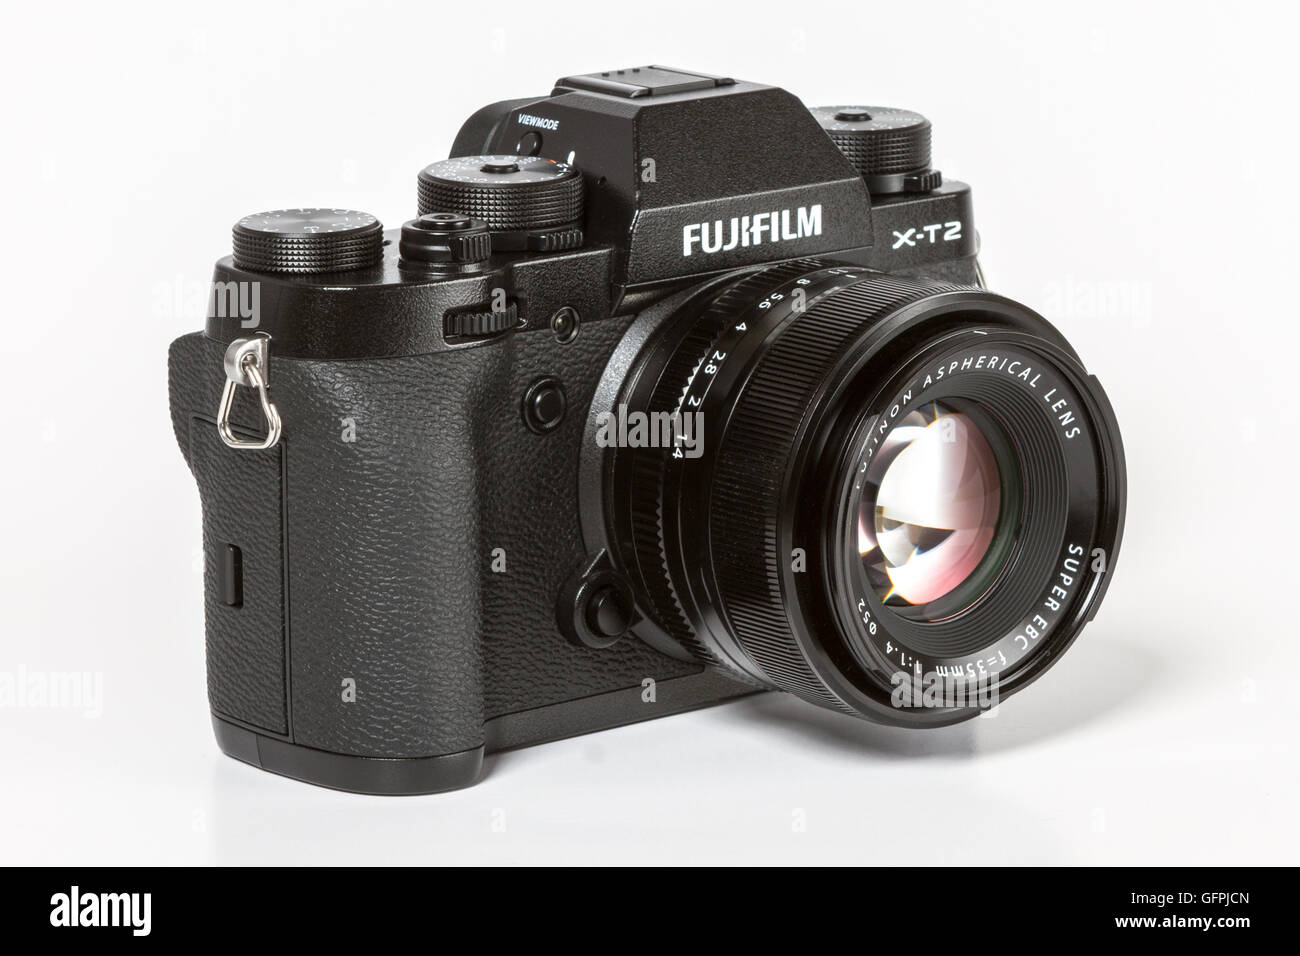 Romantiek Goedkeuring gemeenschap Fujifilm x t2 hi-res stock photography and images - Alamy